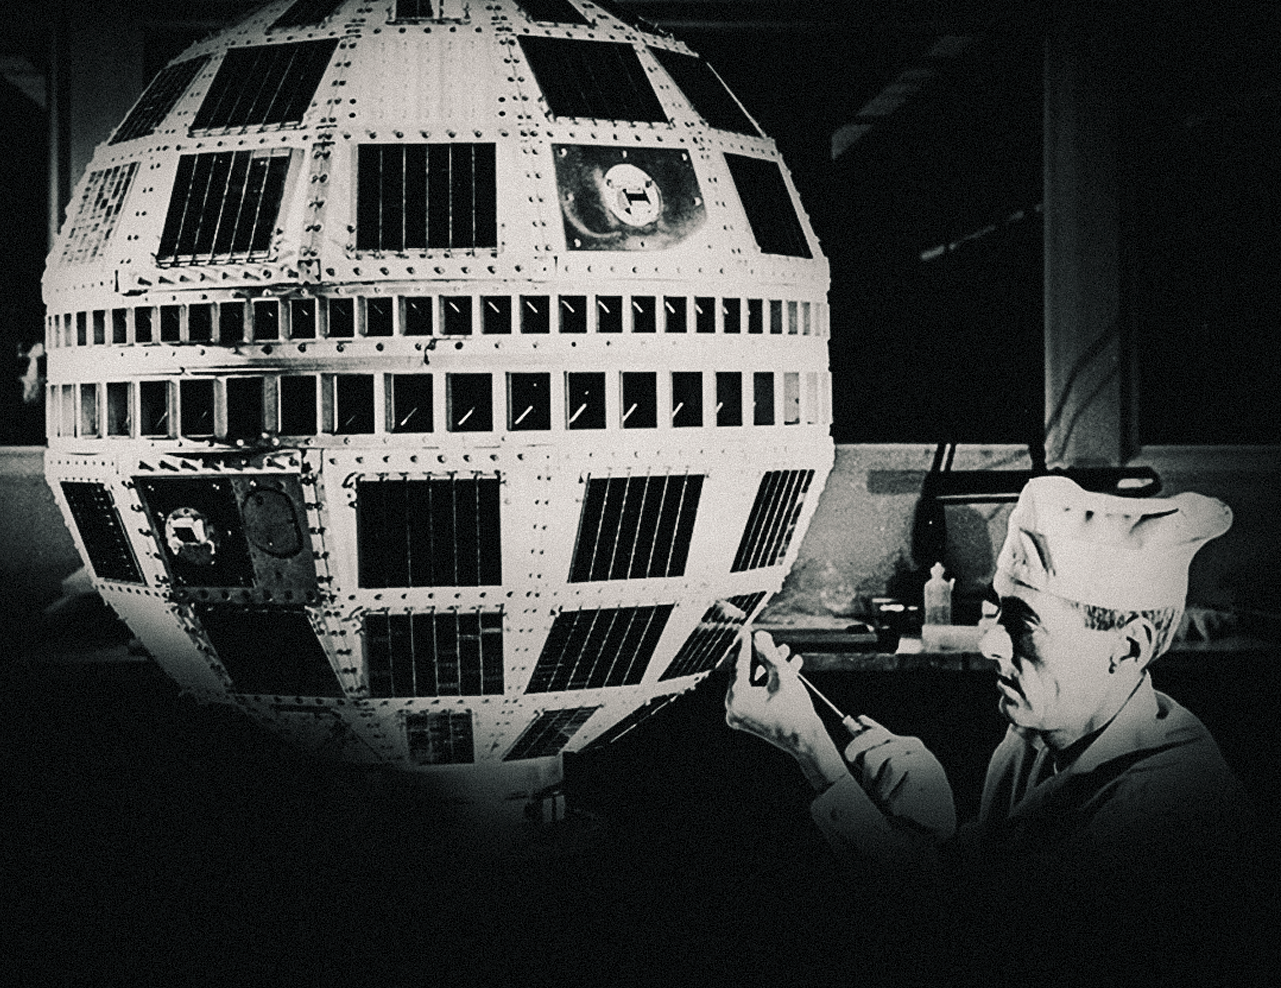 3 DE MAYO 1965. Se realiza la primera transmisión de televisión por satélite